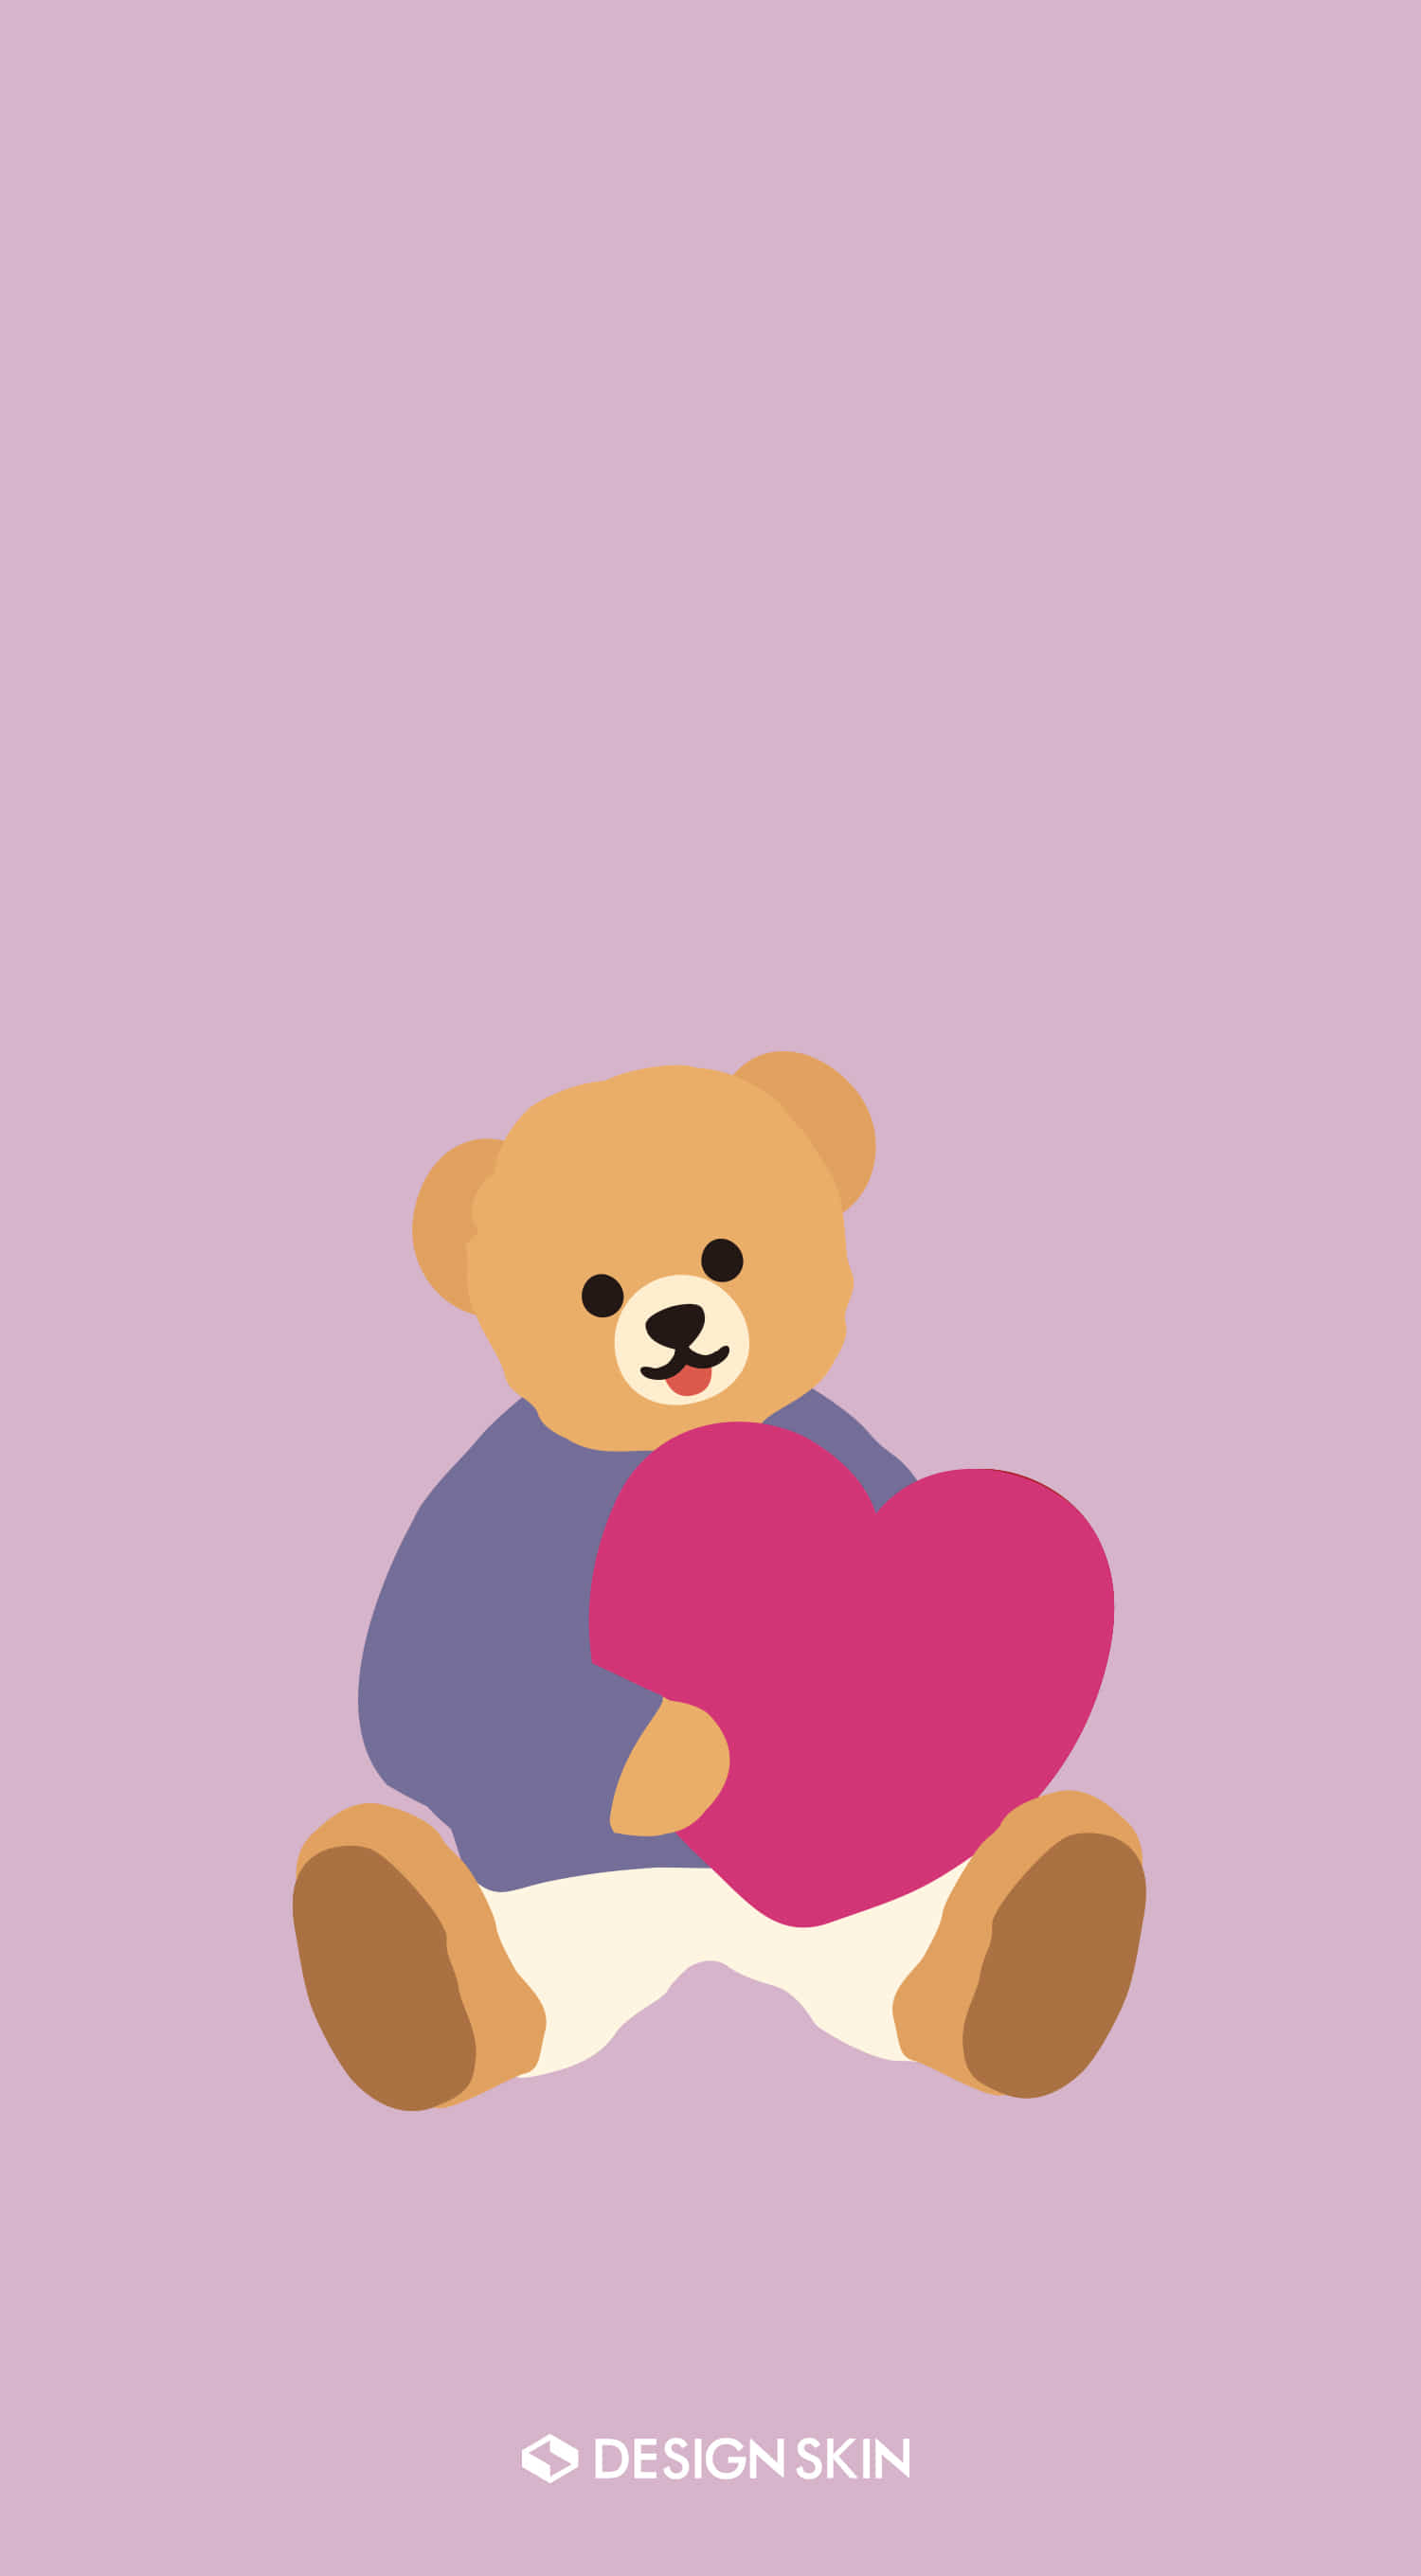 Heart Bear 하트배어 배경화면 무료 배경화면 - 디자인스킨 케이스 몰